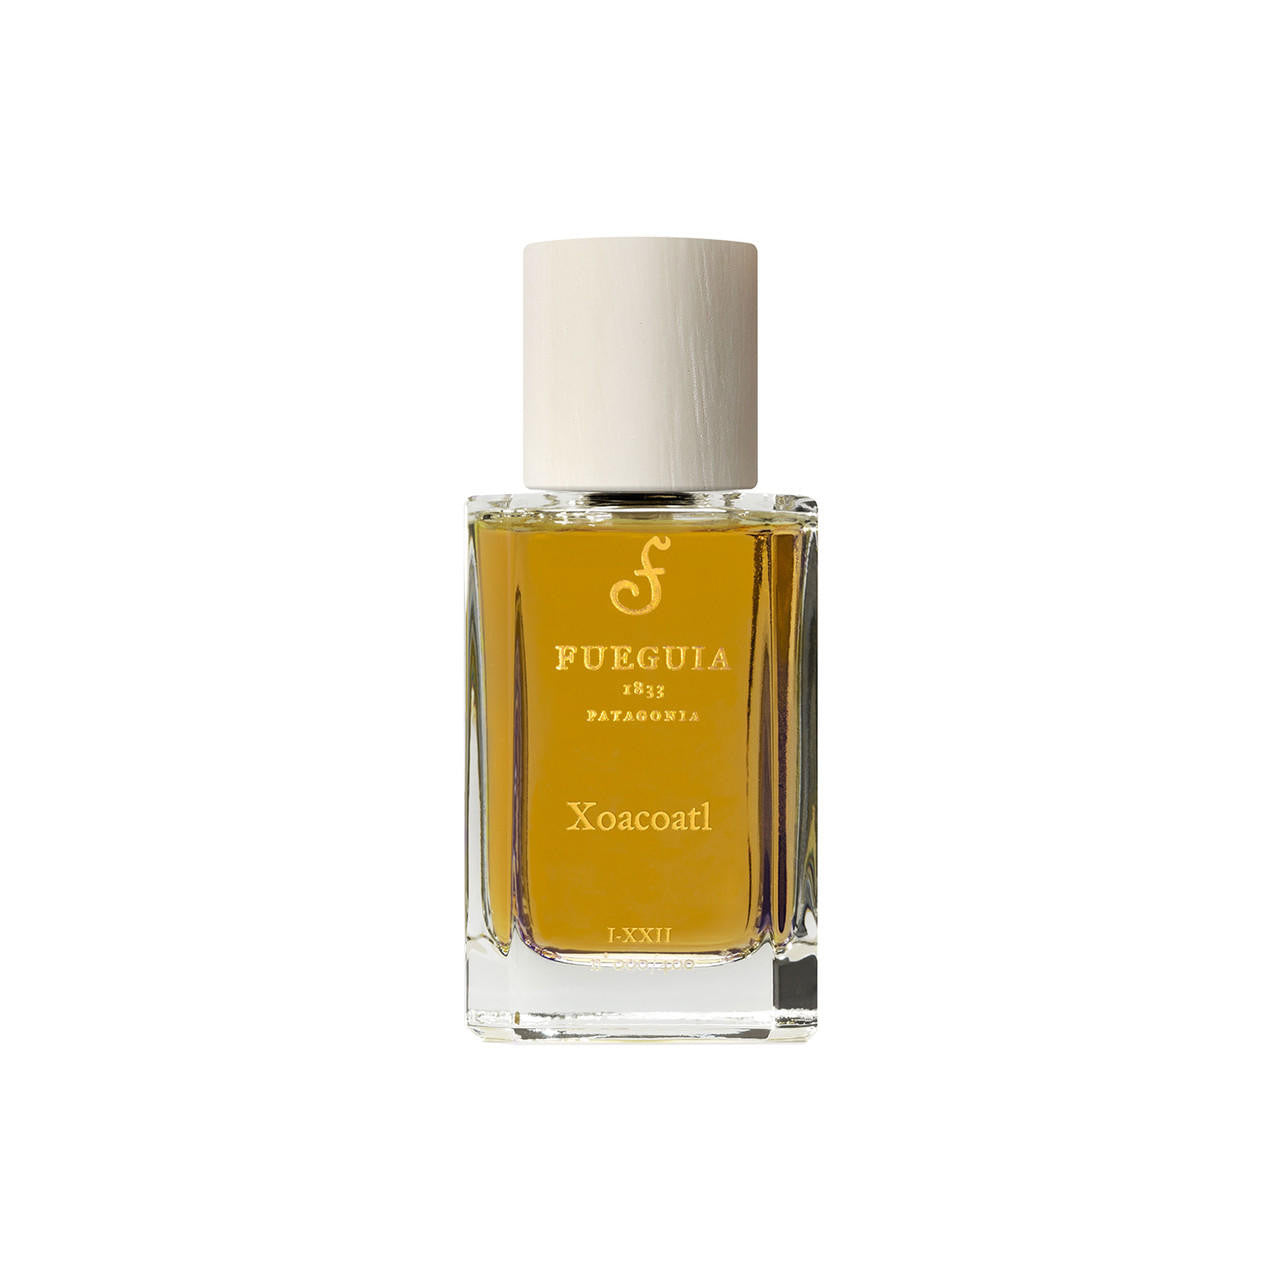 Fueguia 1833 Xocoatl Eau de Parfum | ZGO Perfumery